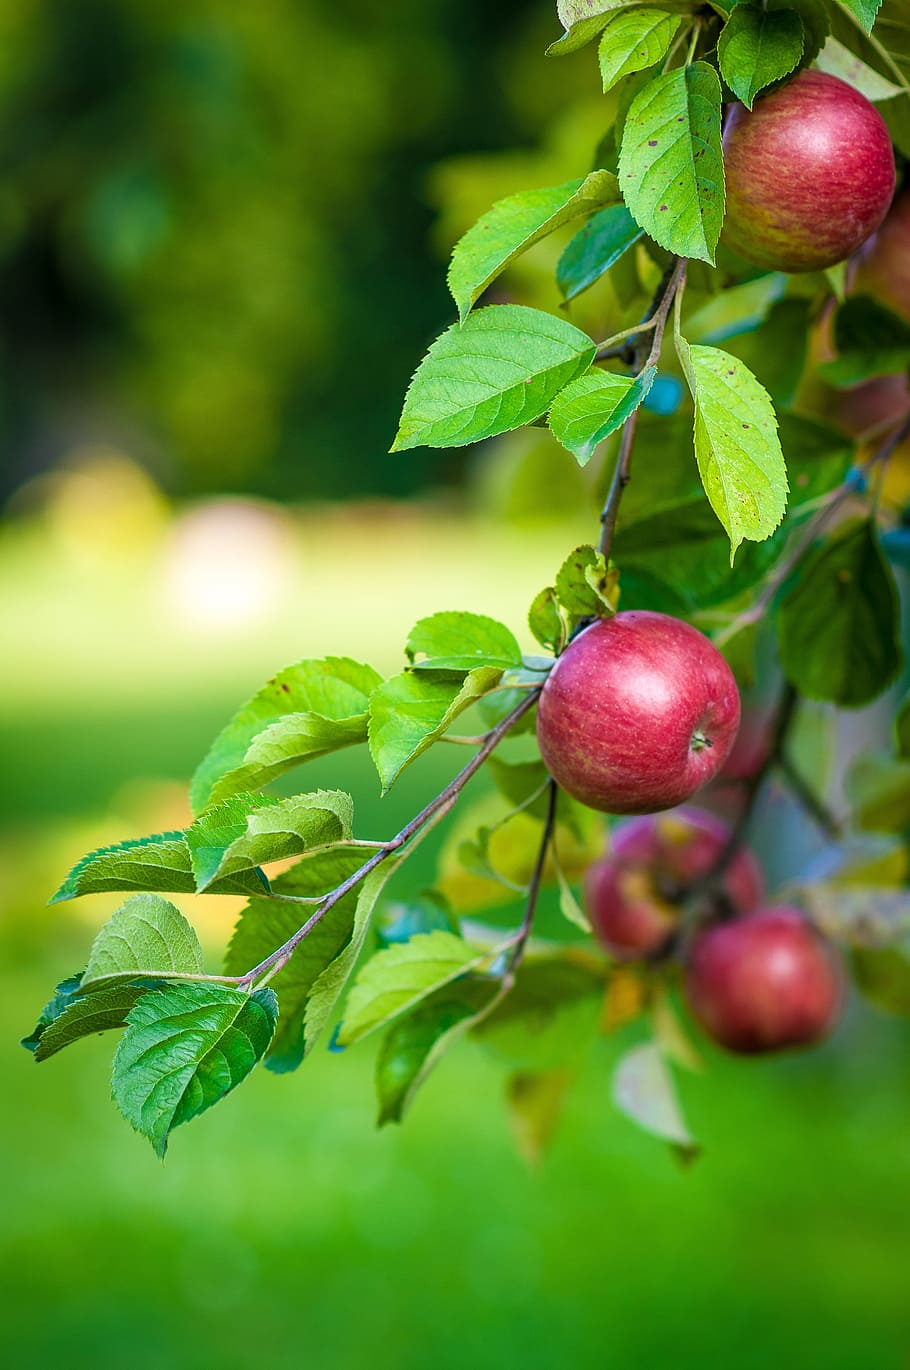 selectivo, fotografía de enfoque, rojo, manzana, árbol, fruta, comida, rama con manzanas, manzanas, triste